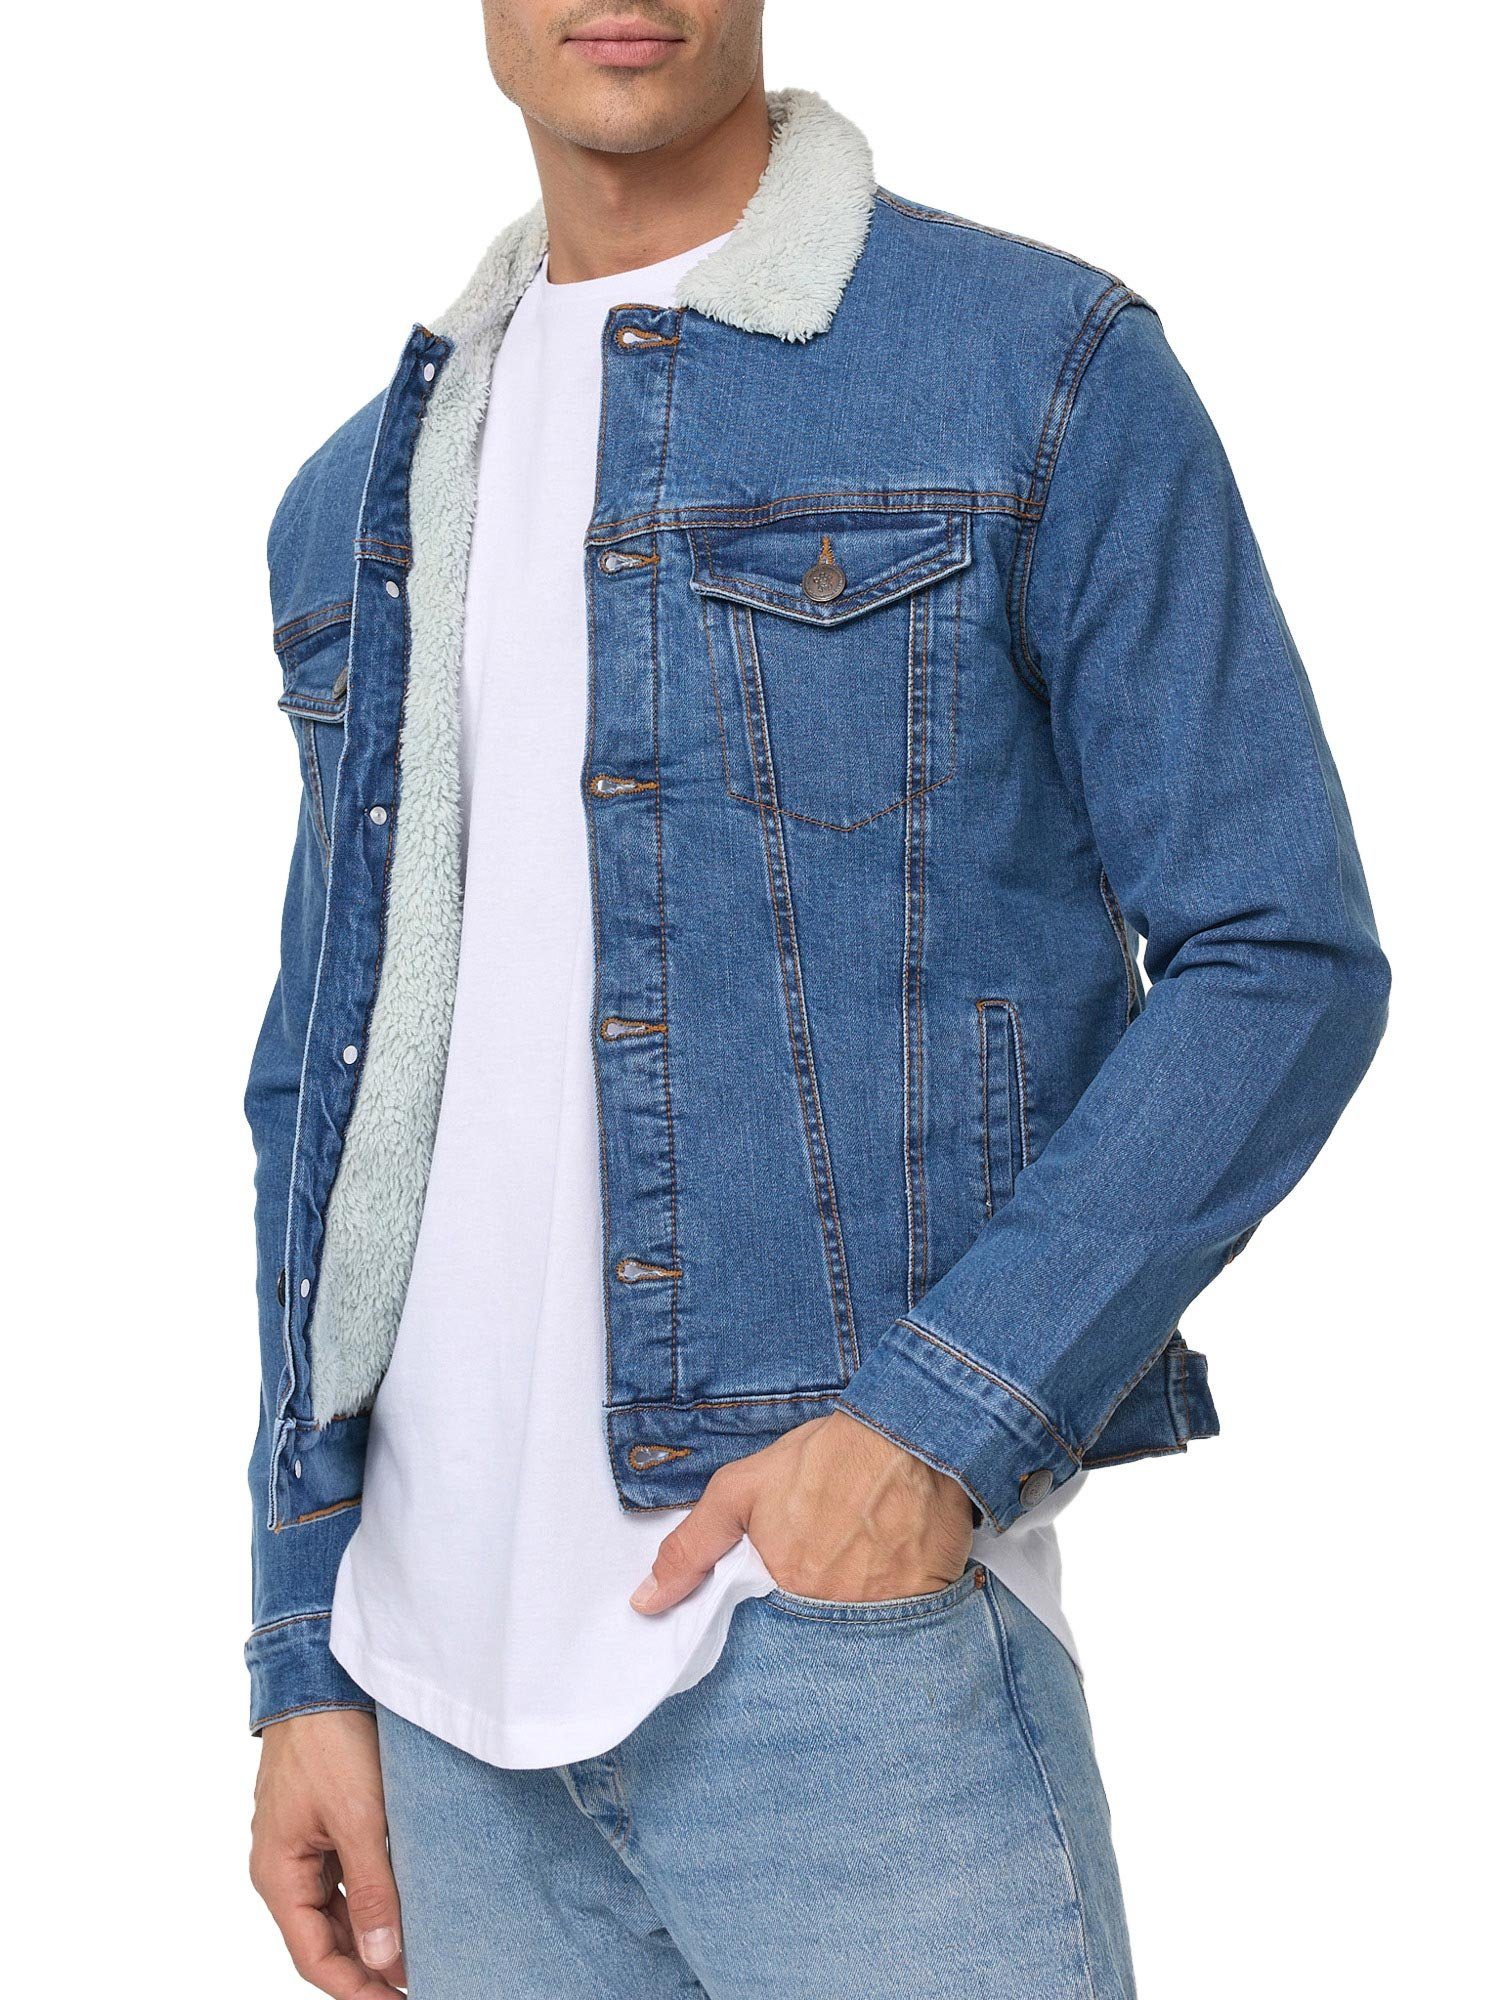 Tazzio Jeansjacke Jacke mit blau A400 Jeans Fellkragen